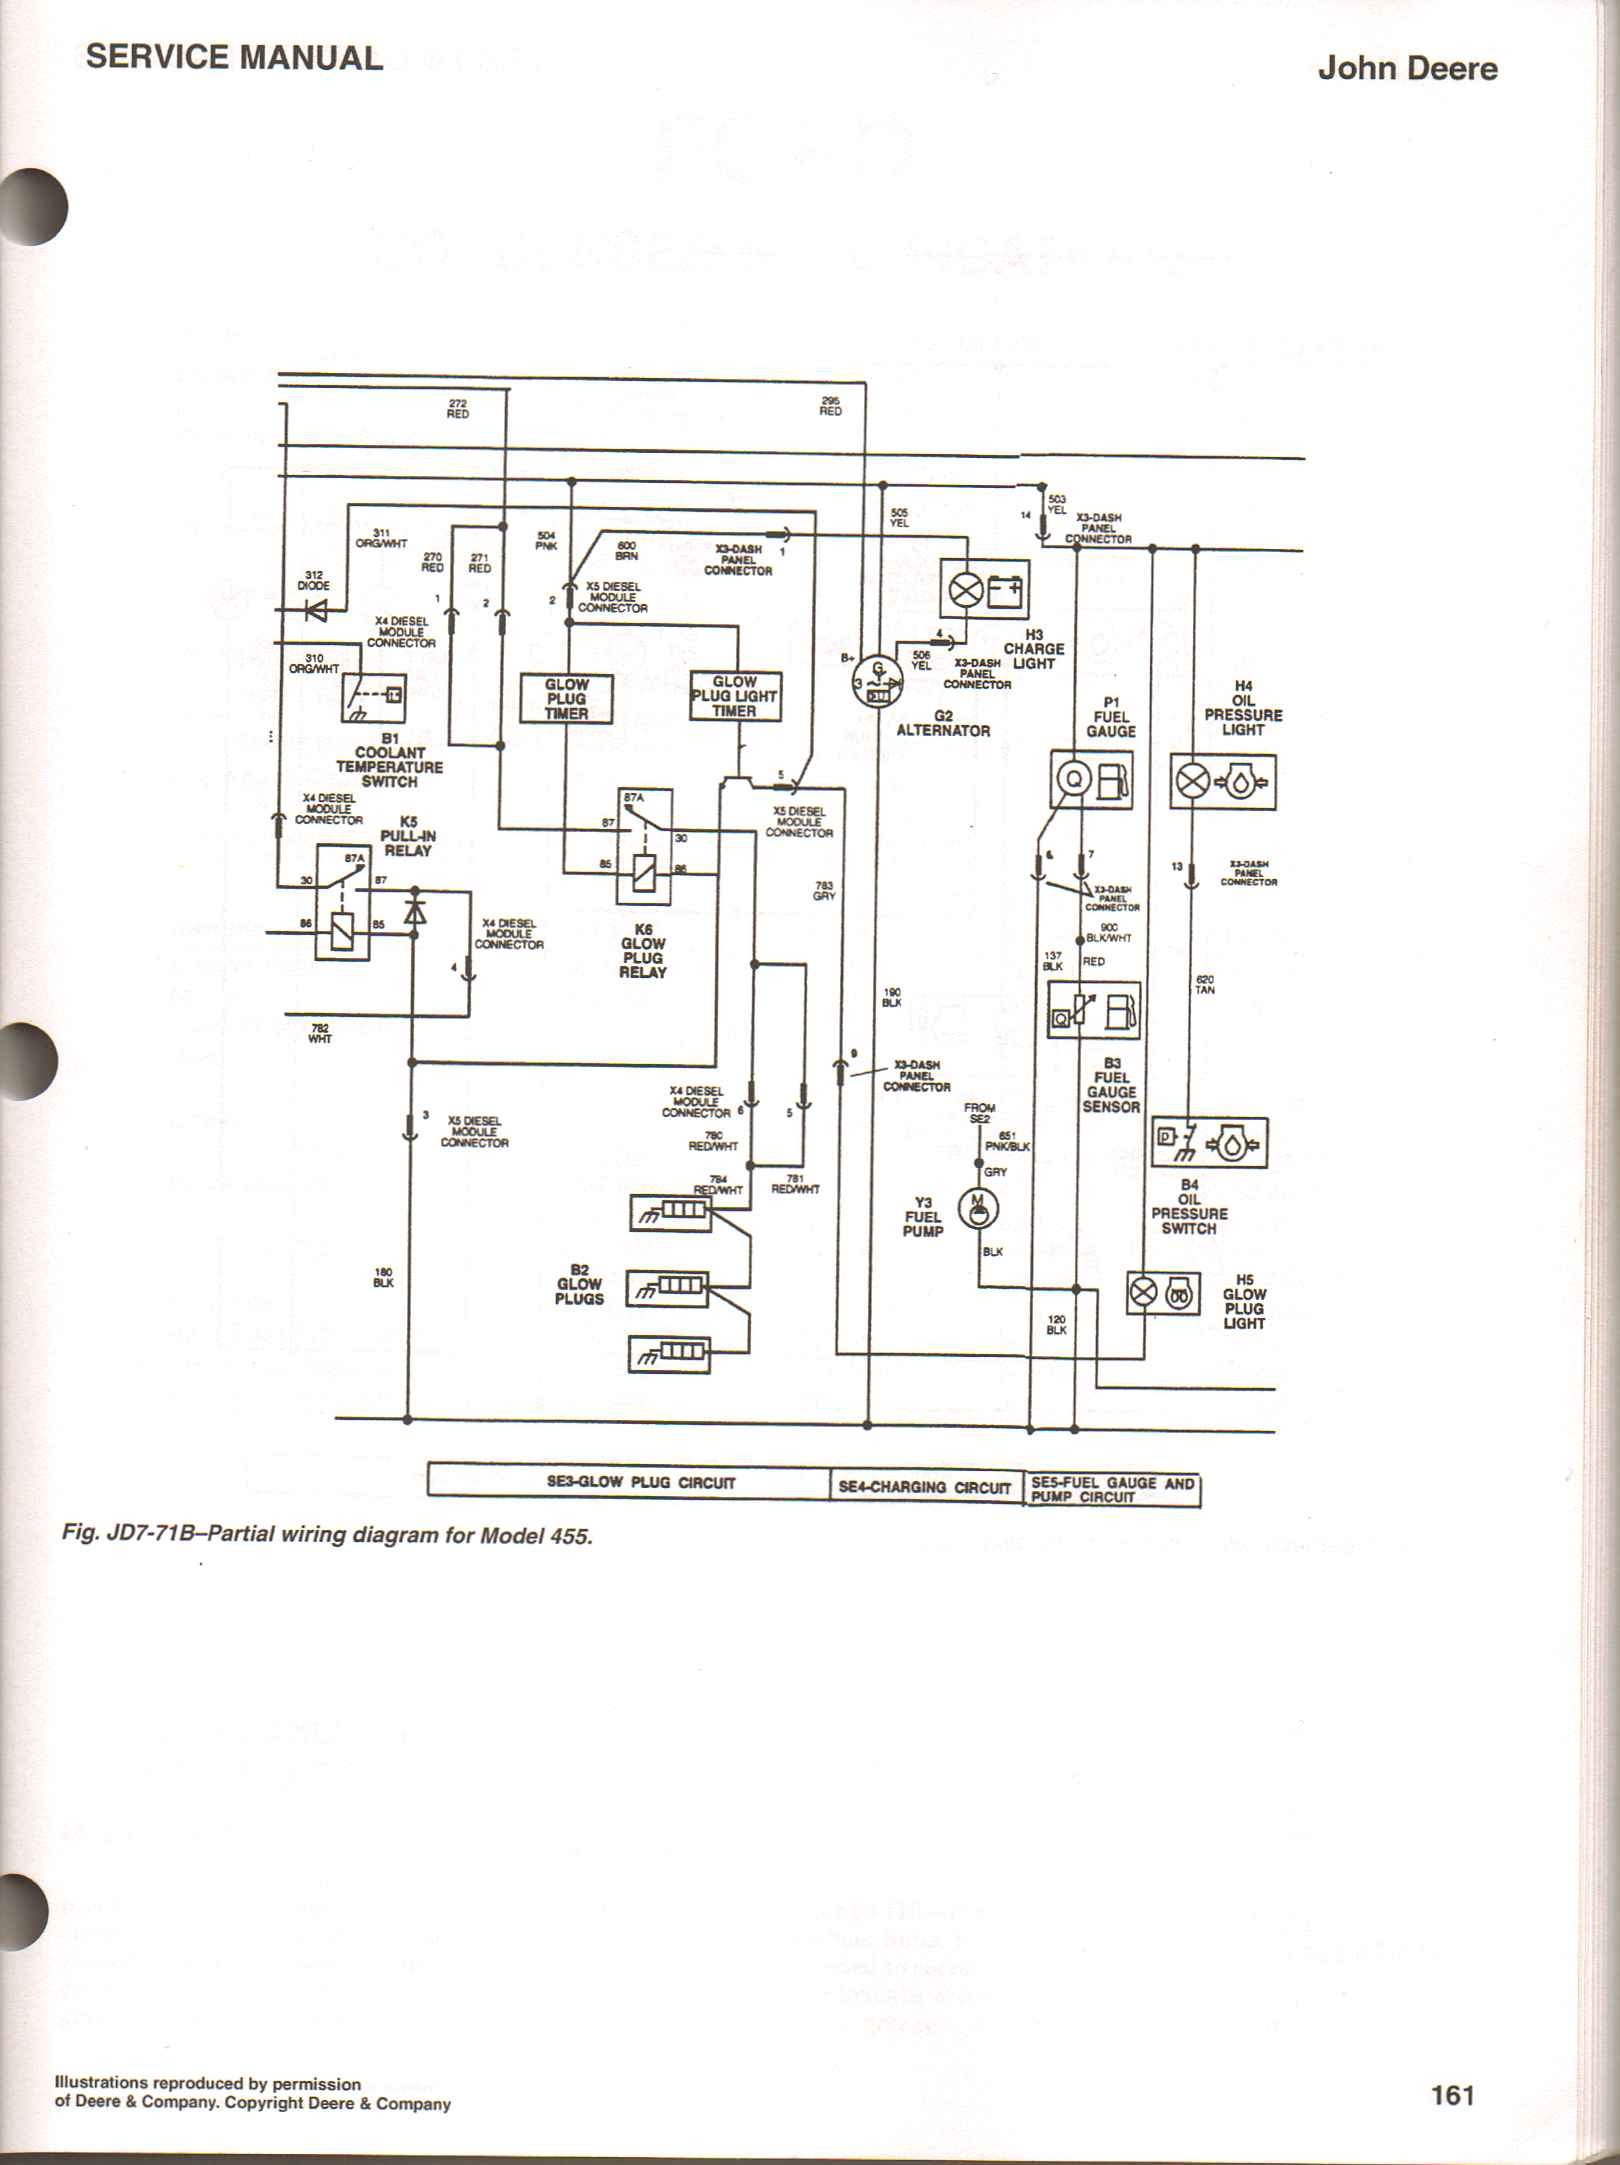 John Deere 4020 Wiring Schematics 4020 Lp Wiring Diagram Of John Deere 4020 Wiring Schematics